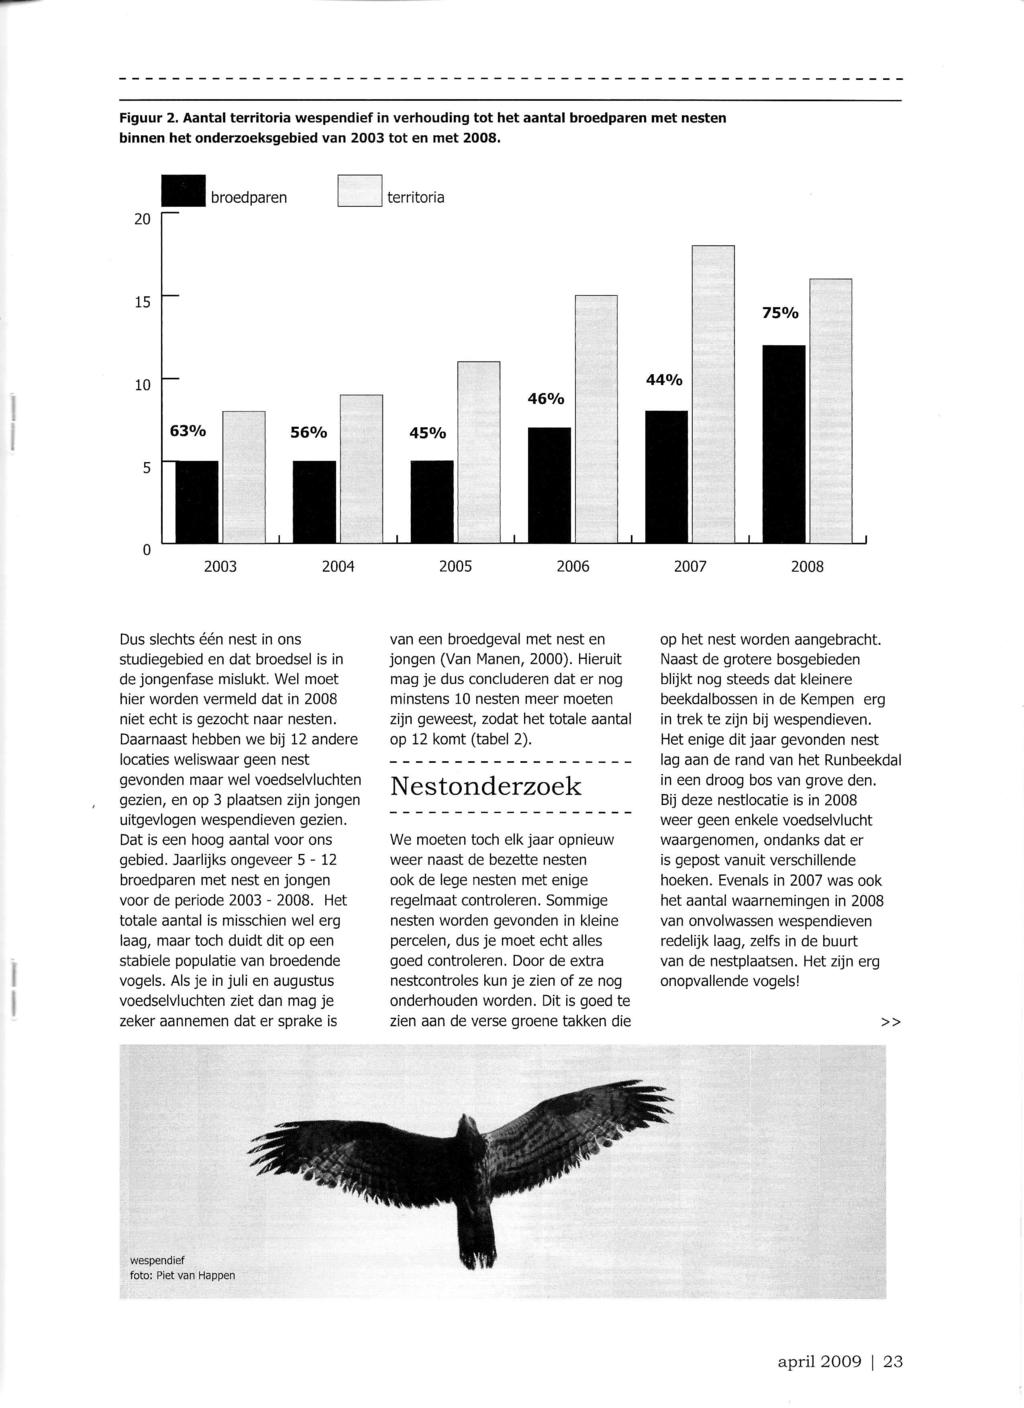 Figuur 2. Aantal territoria wespendief in verhouding tot het aantal broedparen met nesten binnen het onderzoeksgebied van 2003 tot en met 2008.